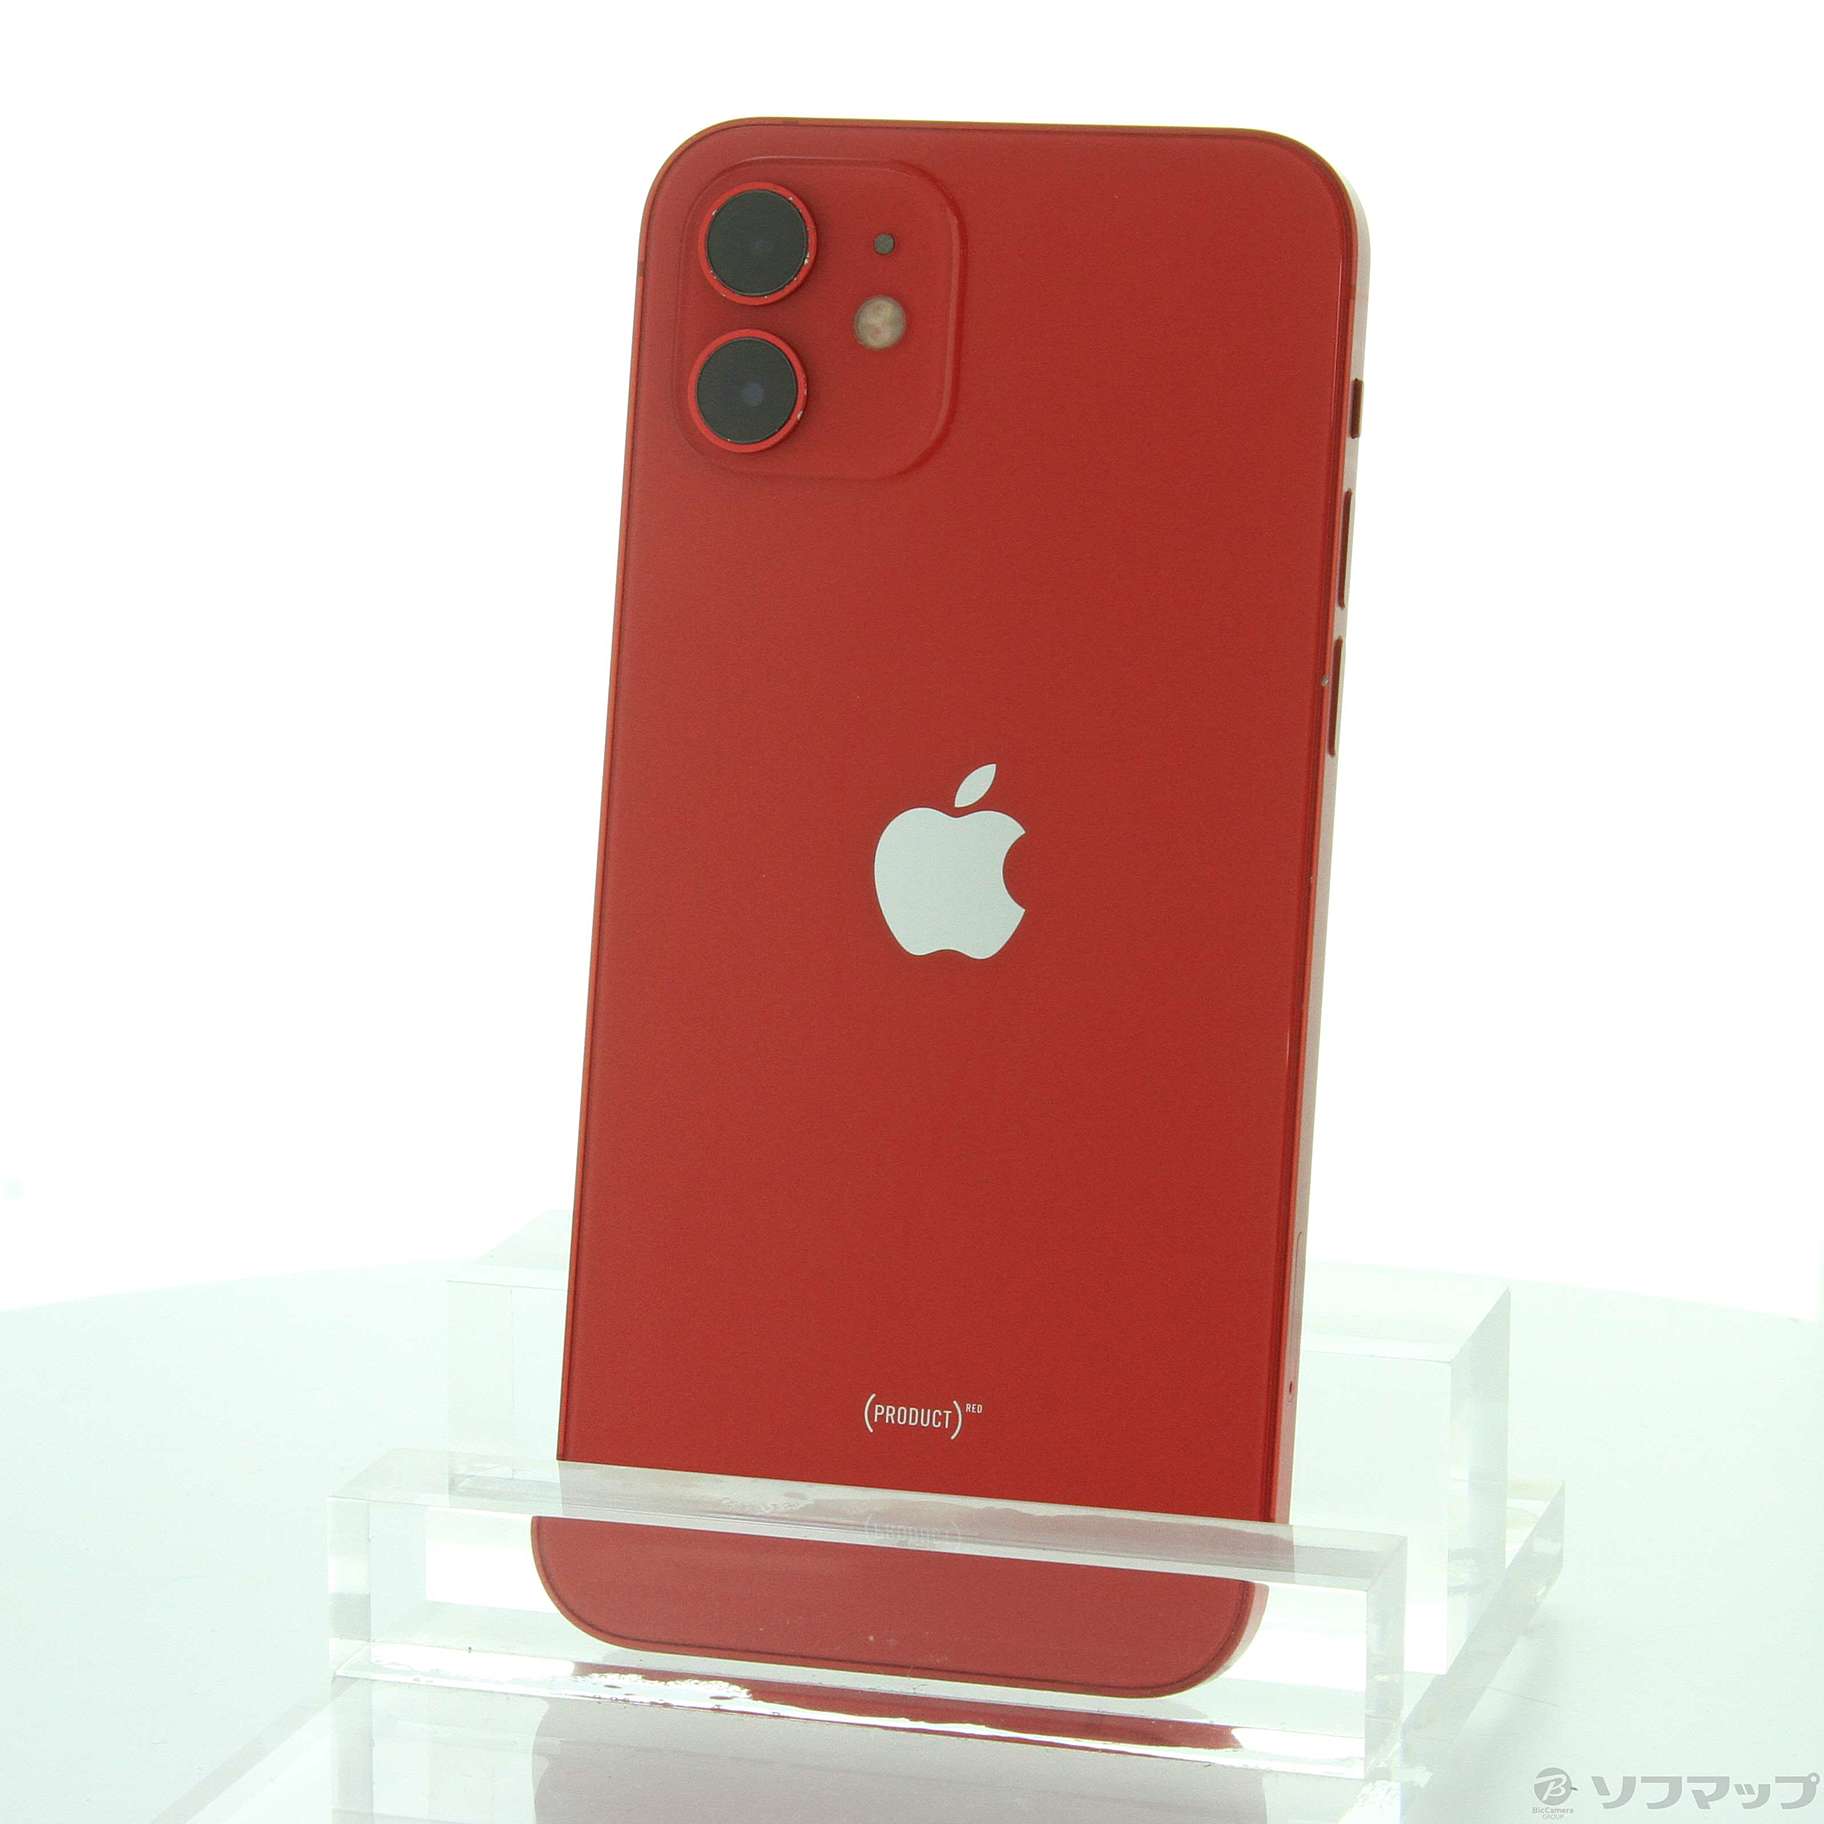 【新品未使用】iPhone12 256GB PRODUCT RED SIMフリー